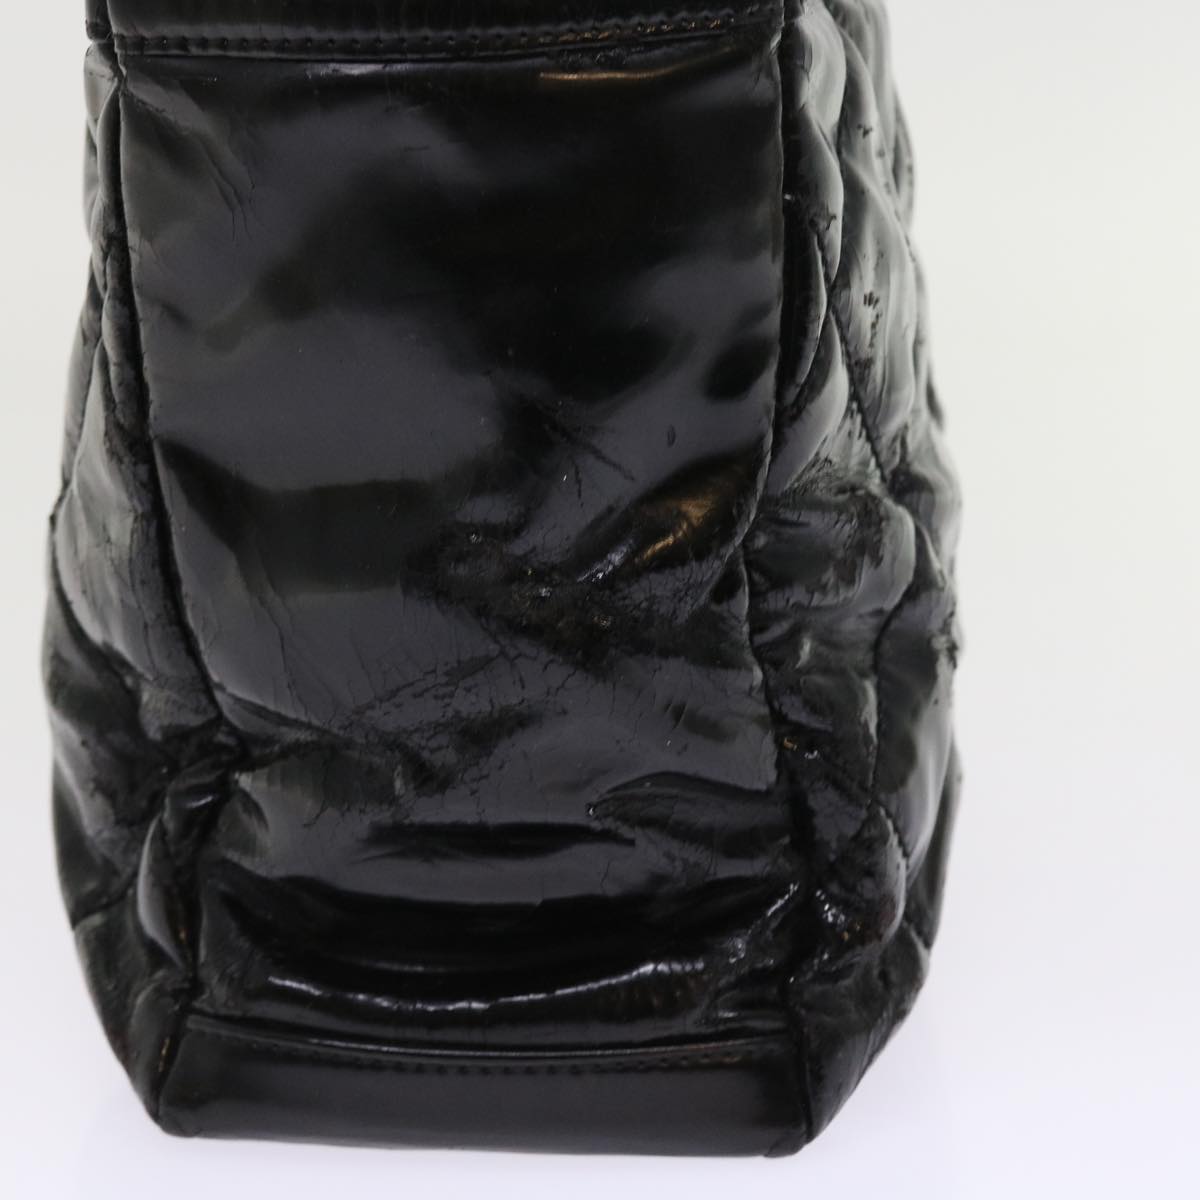 CHANEL Paris Biarritz Hand Bag Patent leather Black CC Auth bs8268